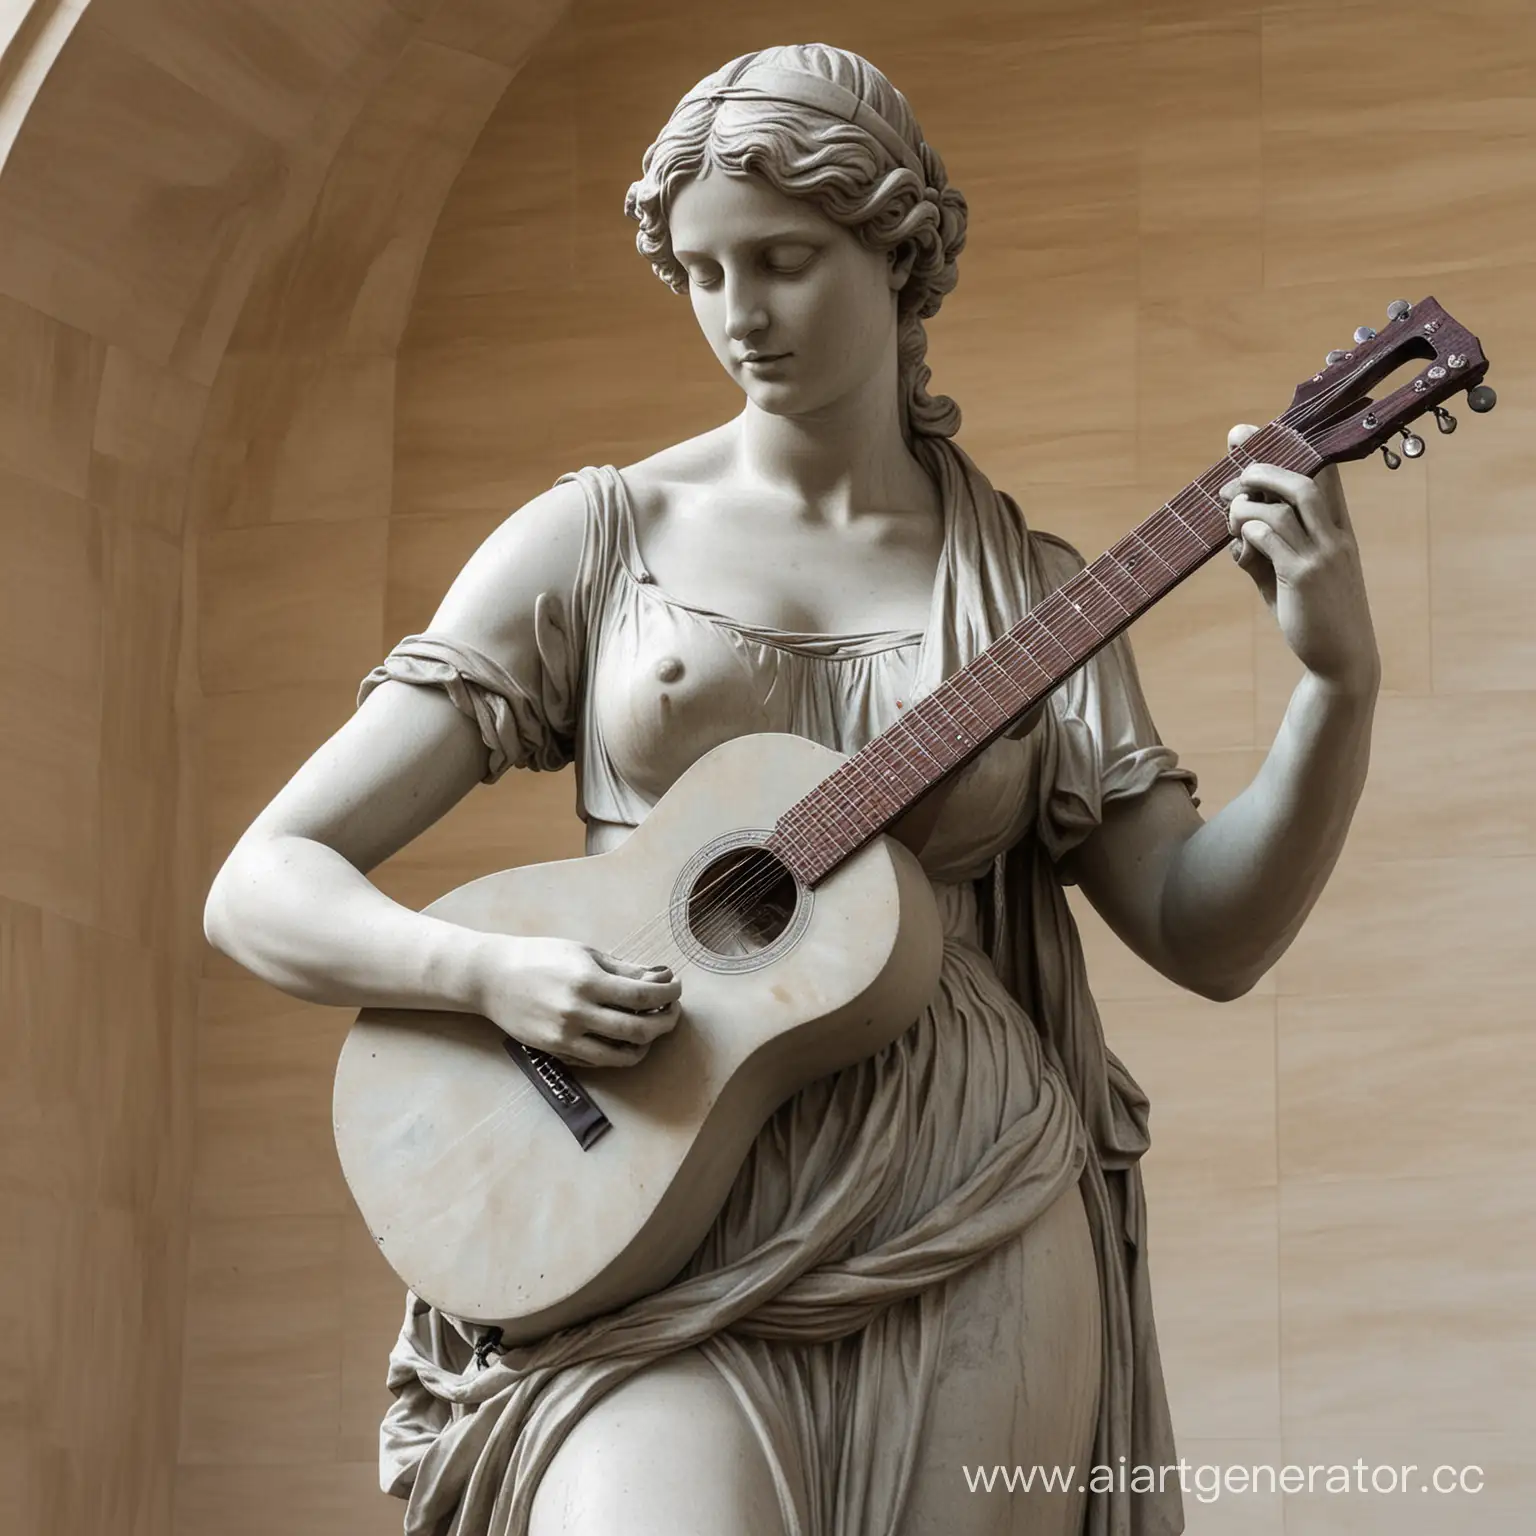 Venus-de-Milo-Strumming-Guitar-in-Classical-Pose